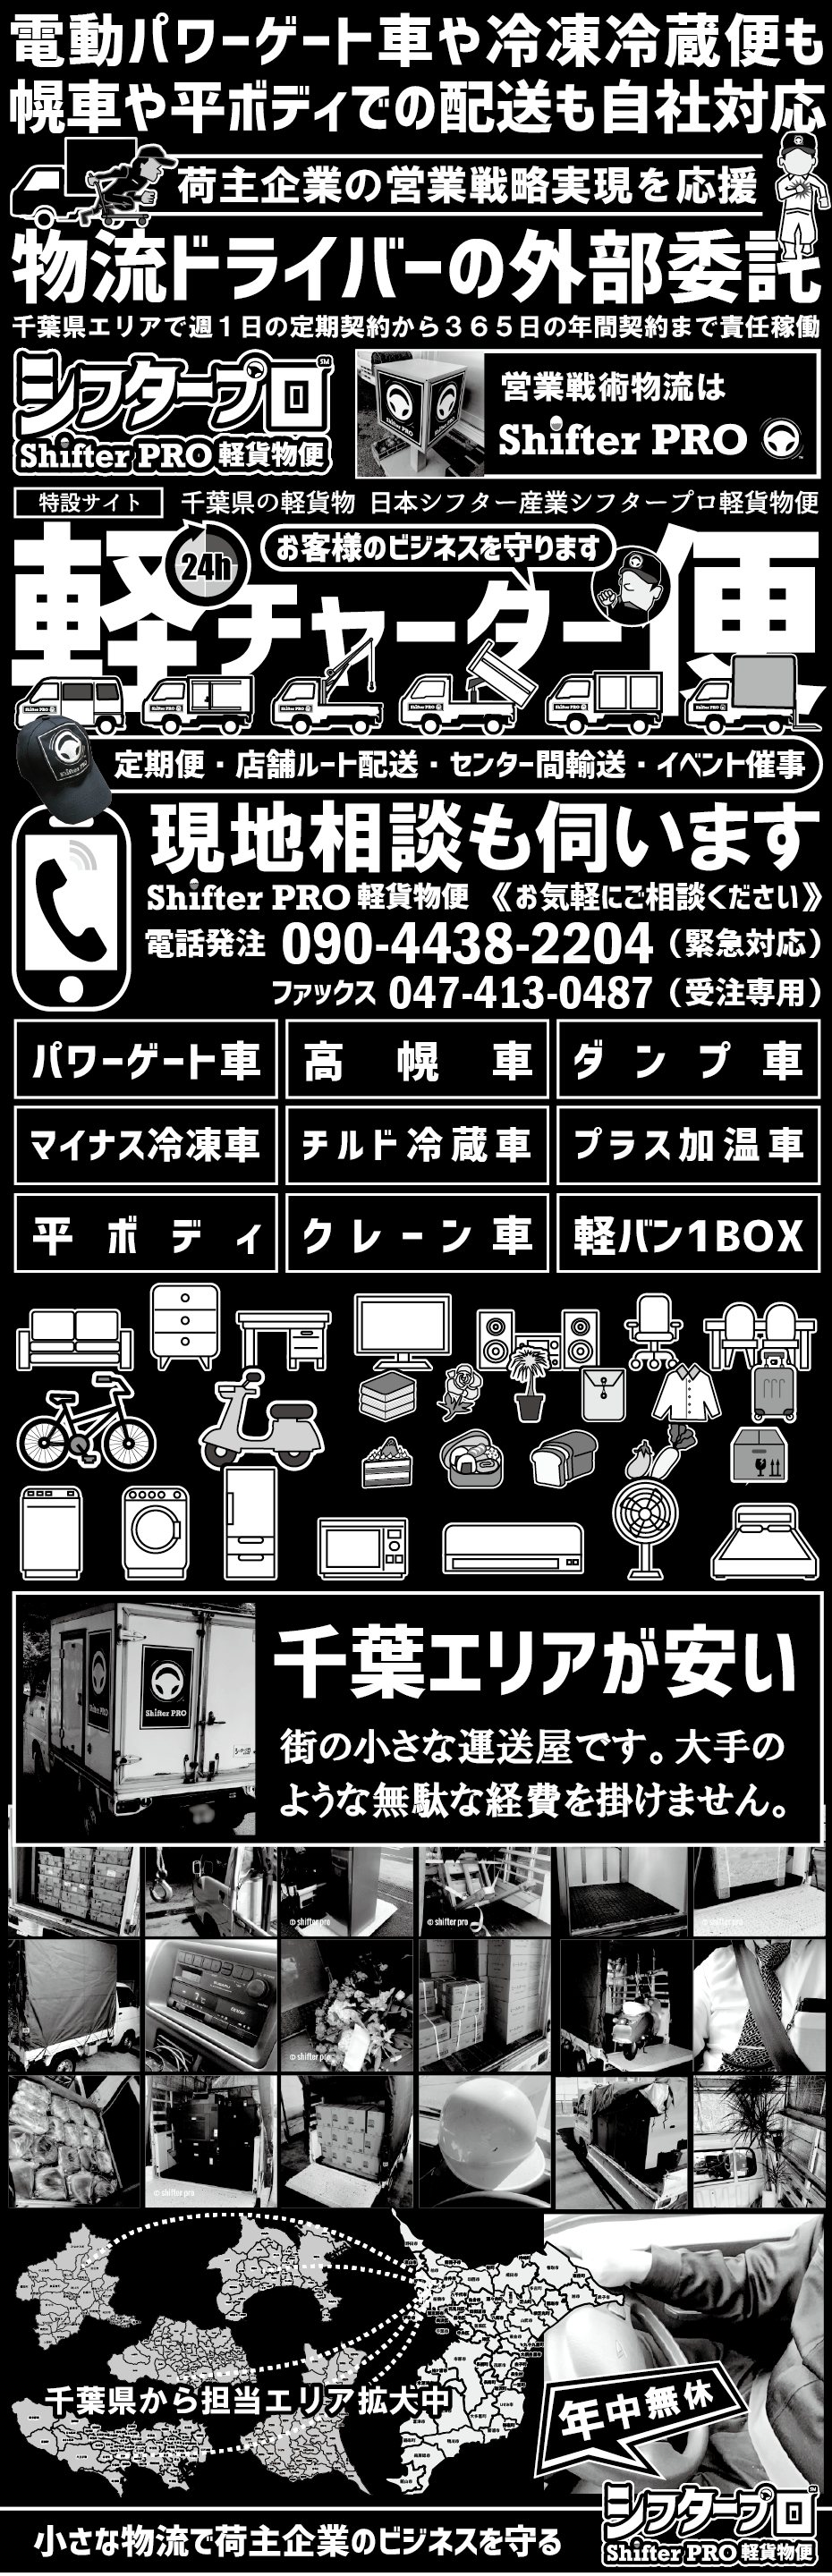 千葉県の軽貨物配送専門店シフタープロ